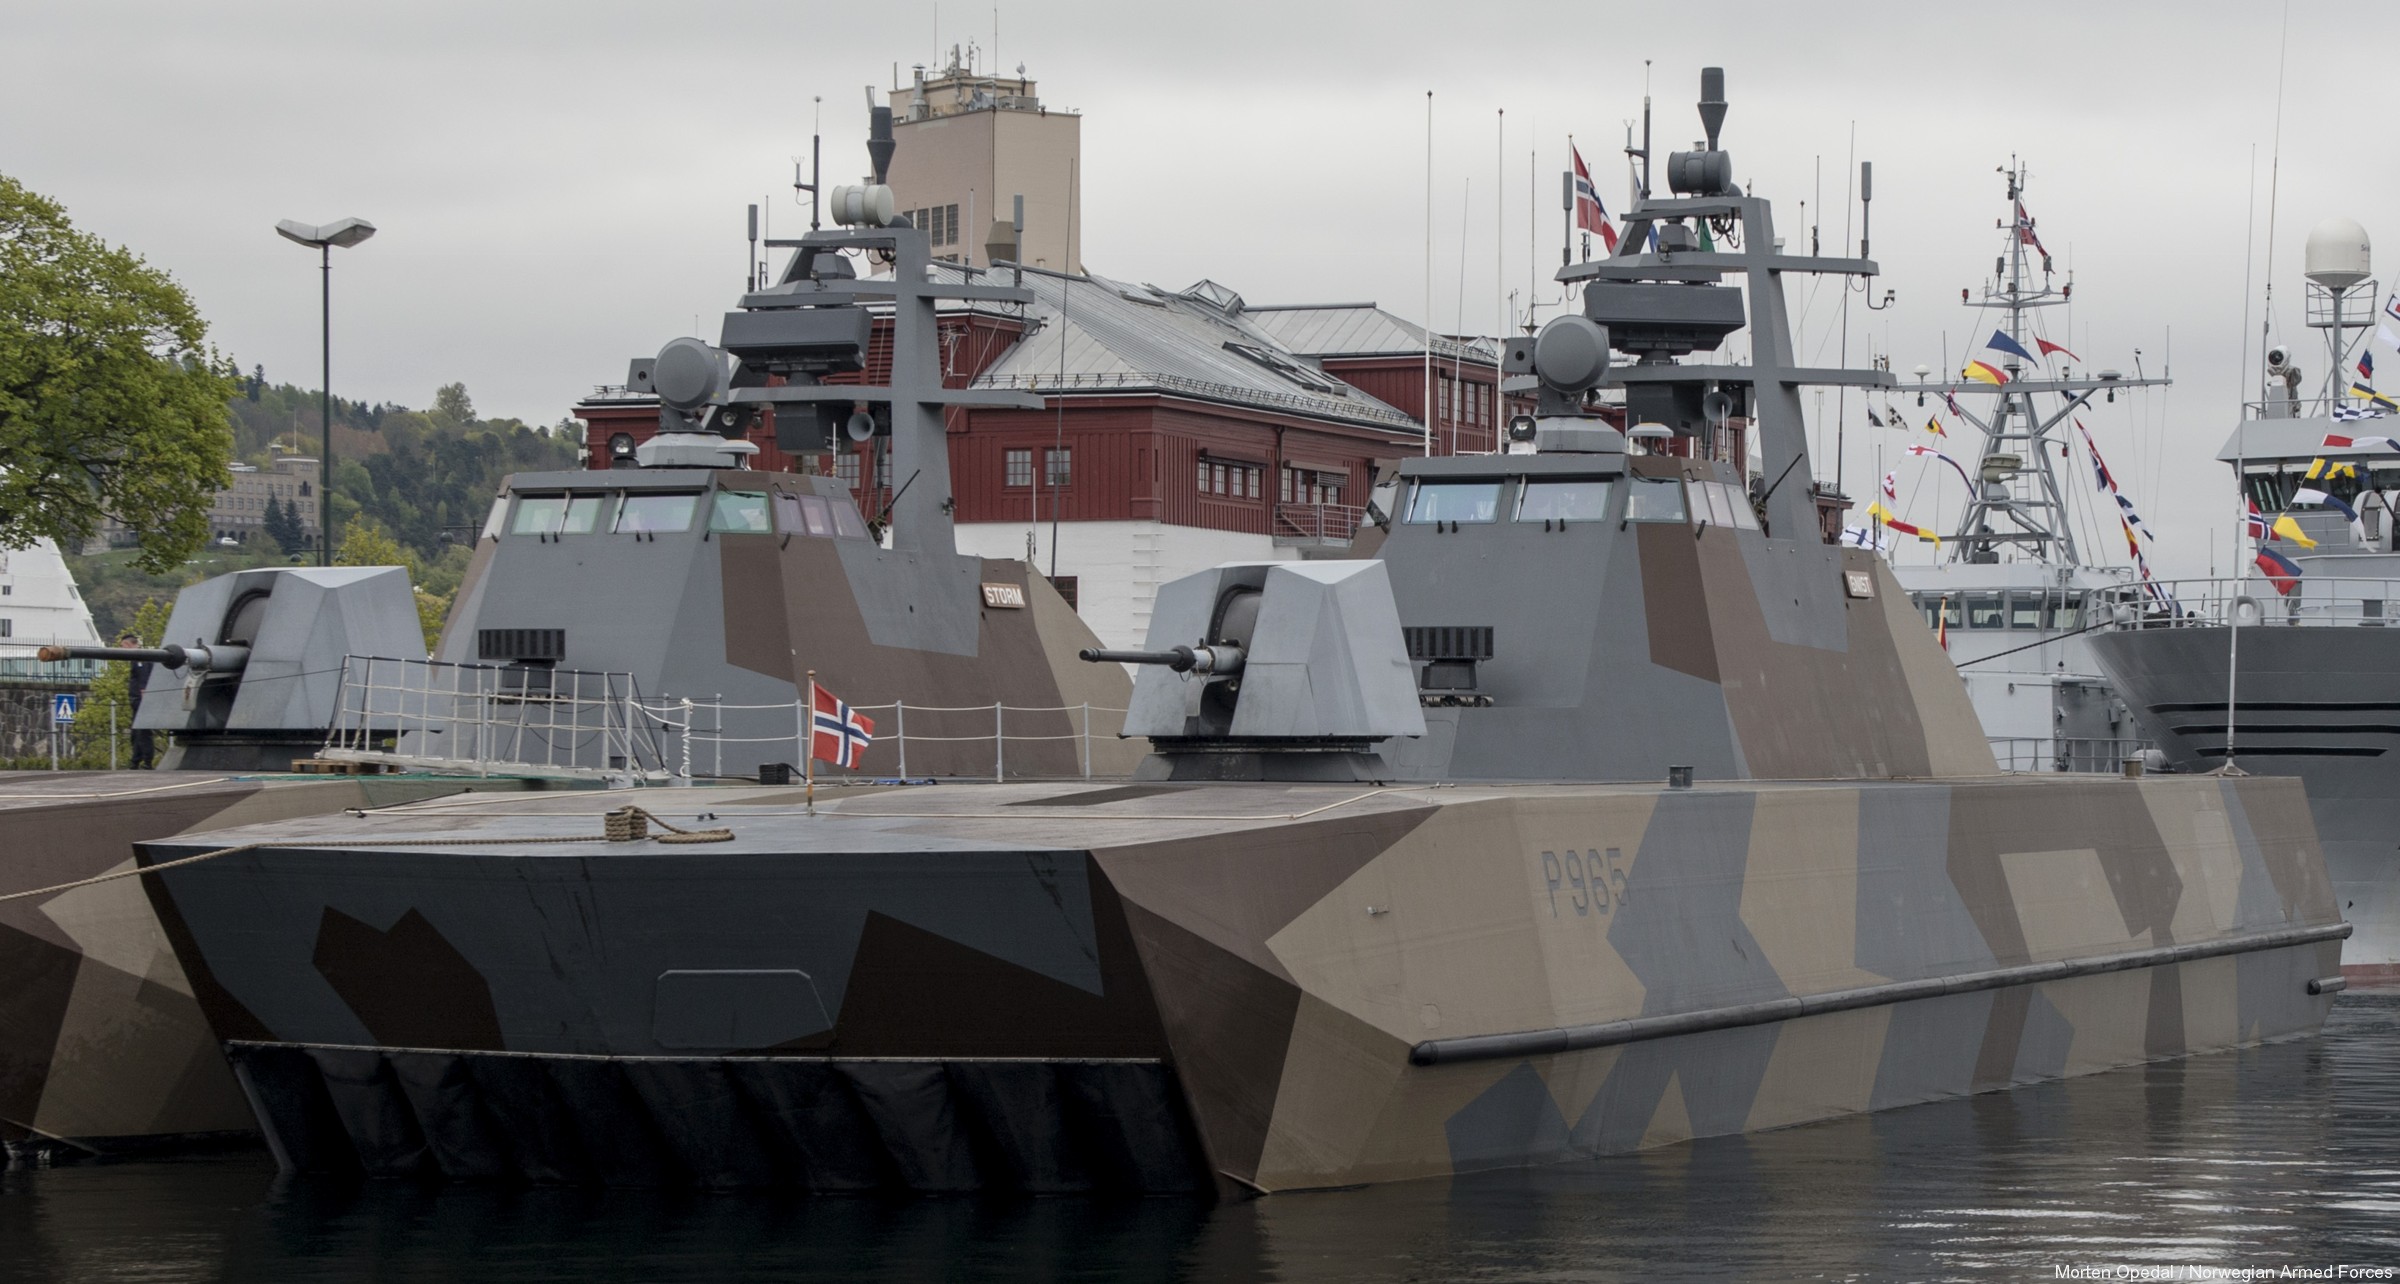 p-965 gnist knm hnoms skjold class corvette royal norwegian navy sjoforsvaret 09